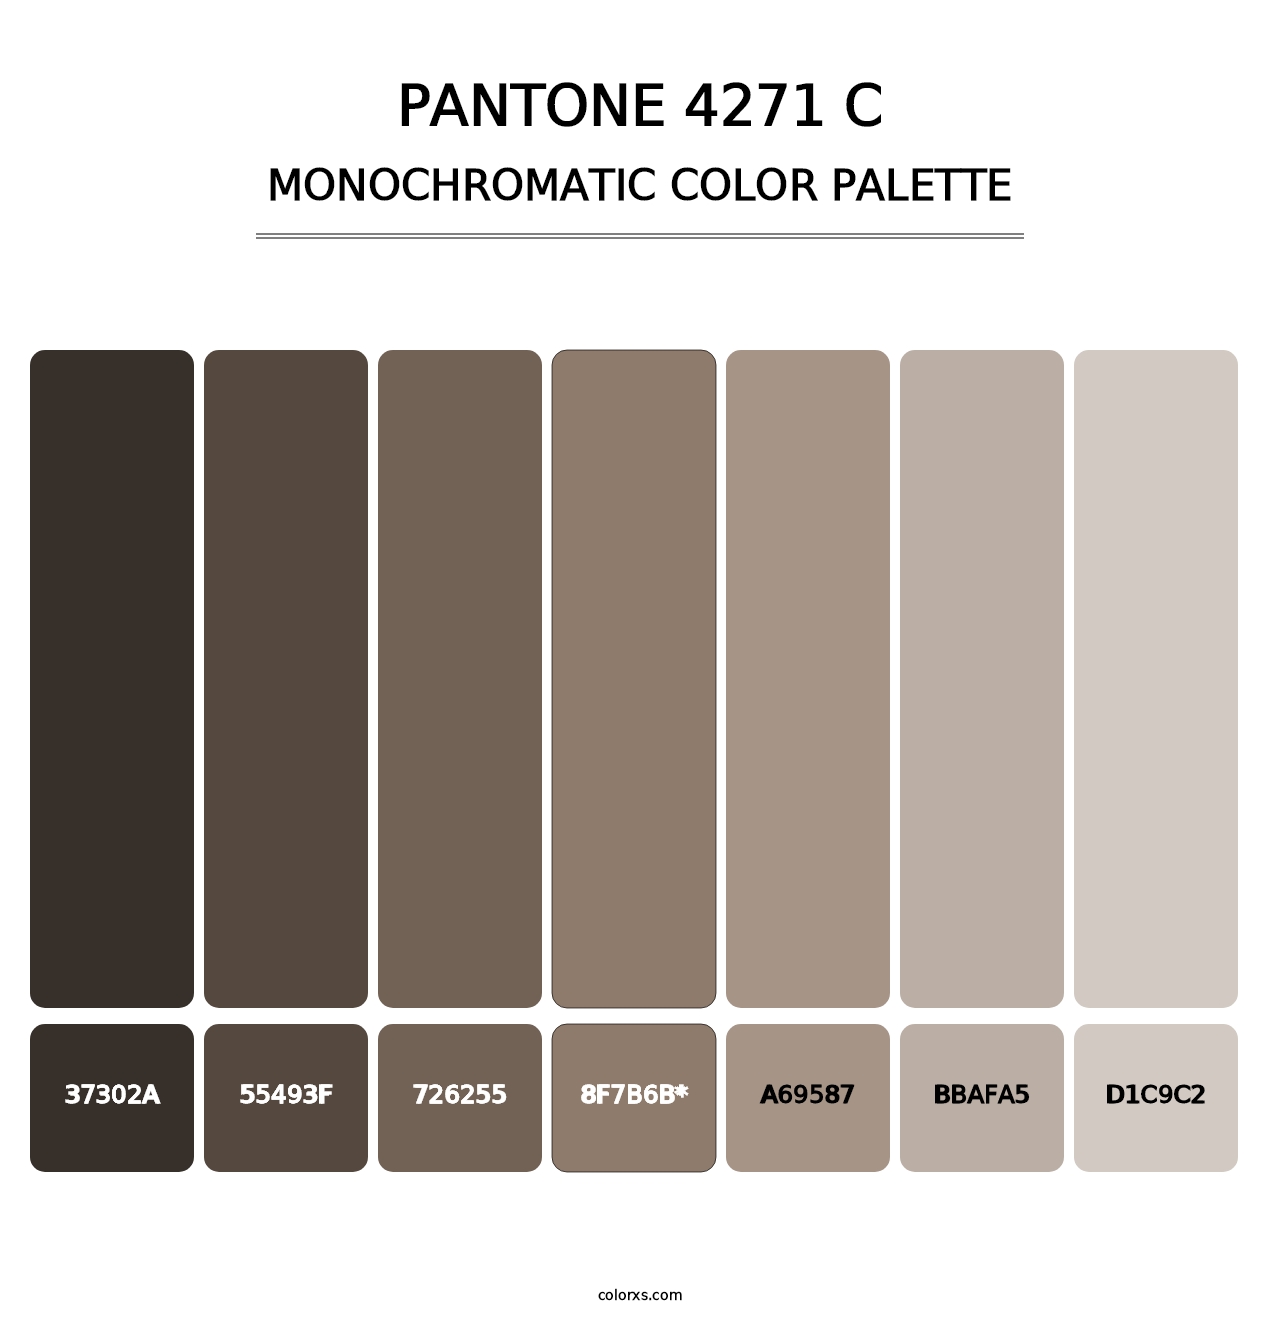 PANTONE 4271 C - Monochromatic Color Palette